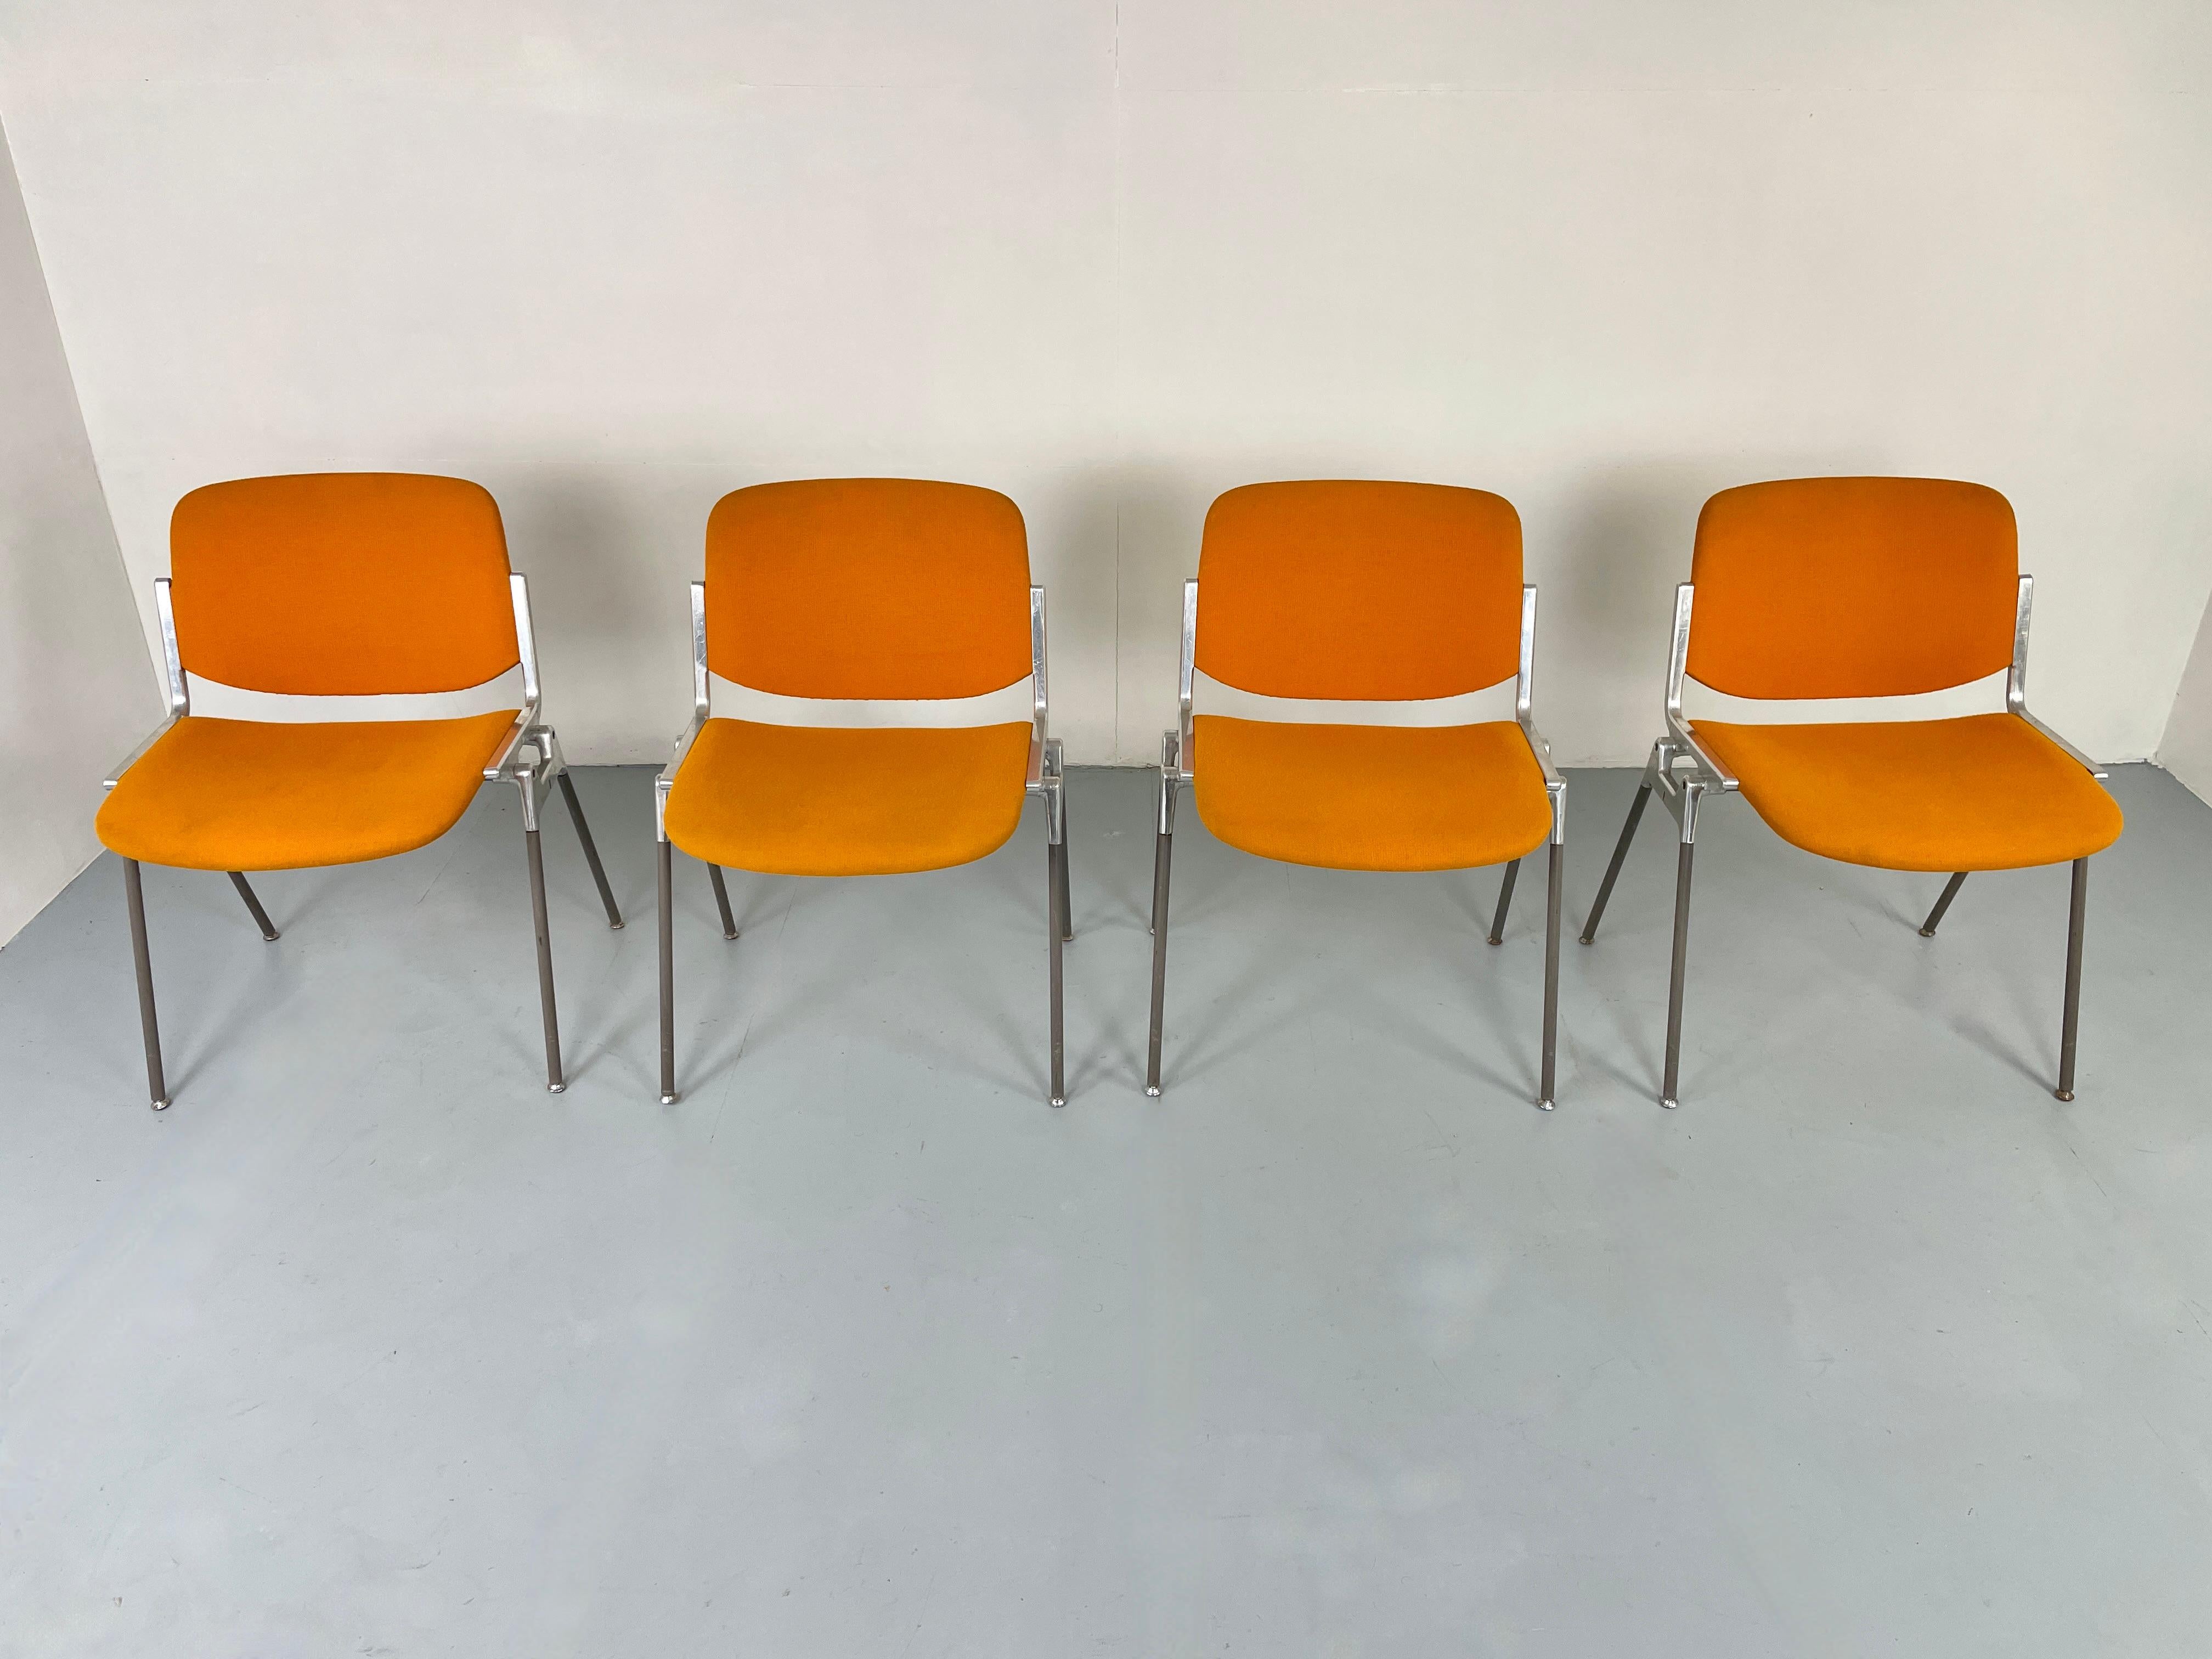 Chaises empilables italiennes iconiques de Giancarlo Piretti pour Anonima Castelli.

DSC 106 est l'une des chaises les plus célèbres de la marque castelli. conçue en 1965 par giancarlo piretti, elle reste un objet au design innovant et